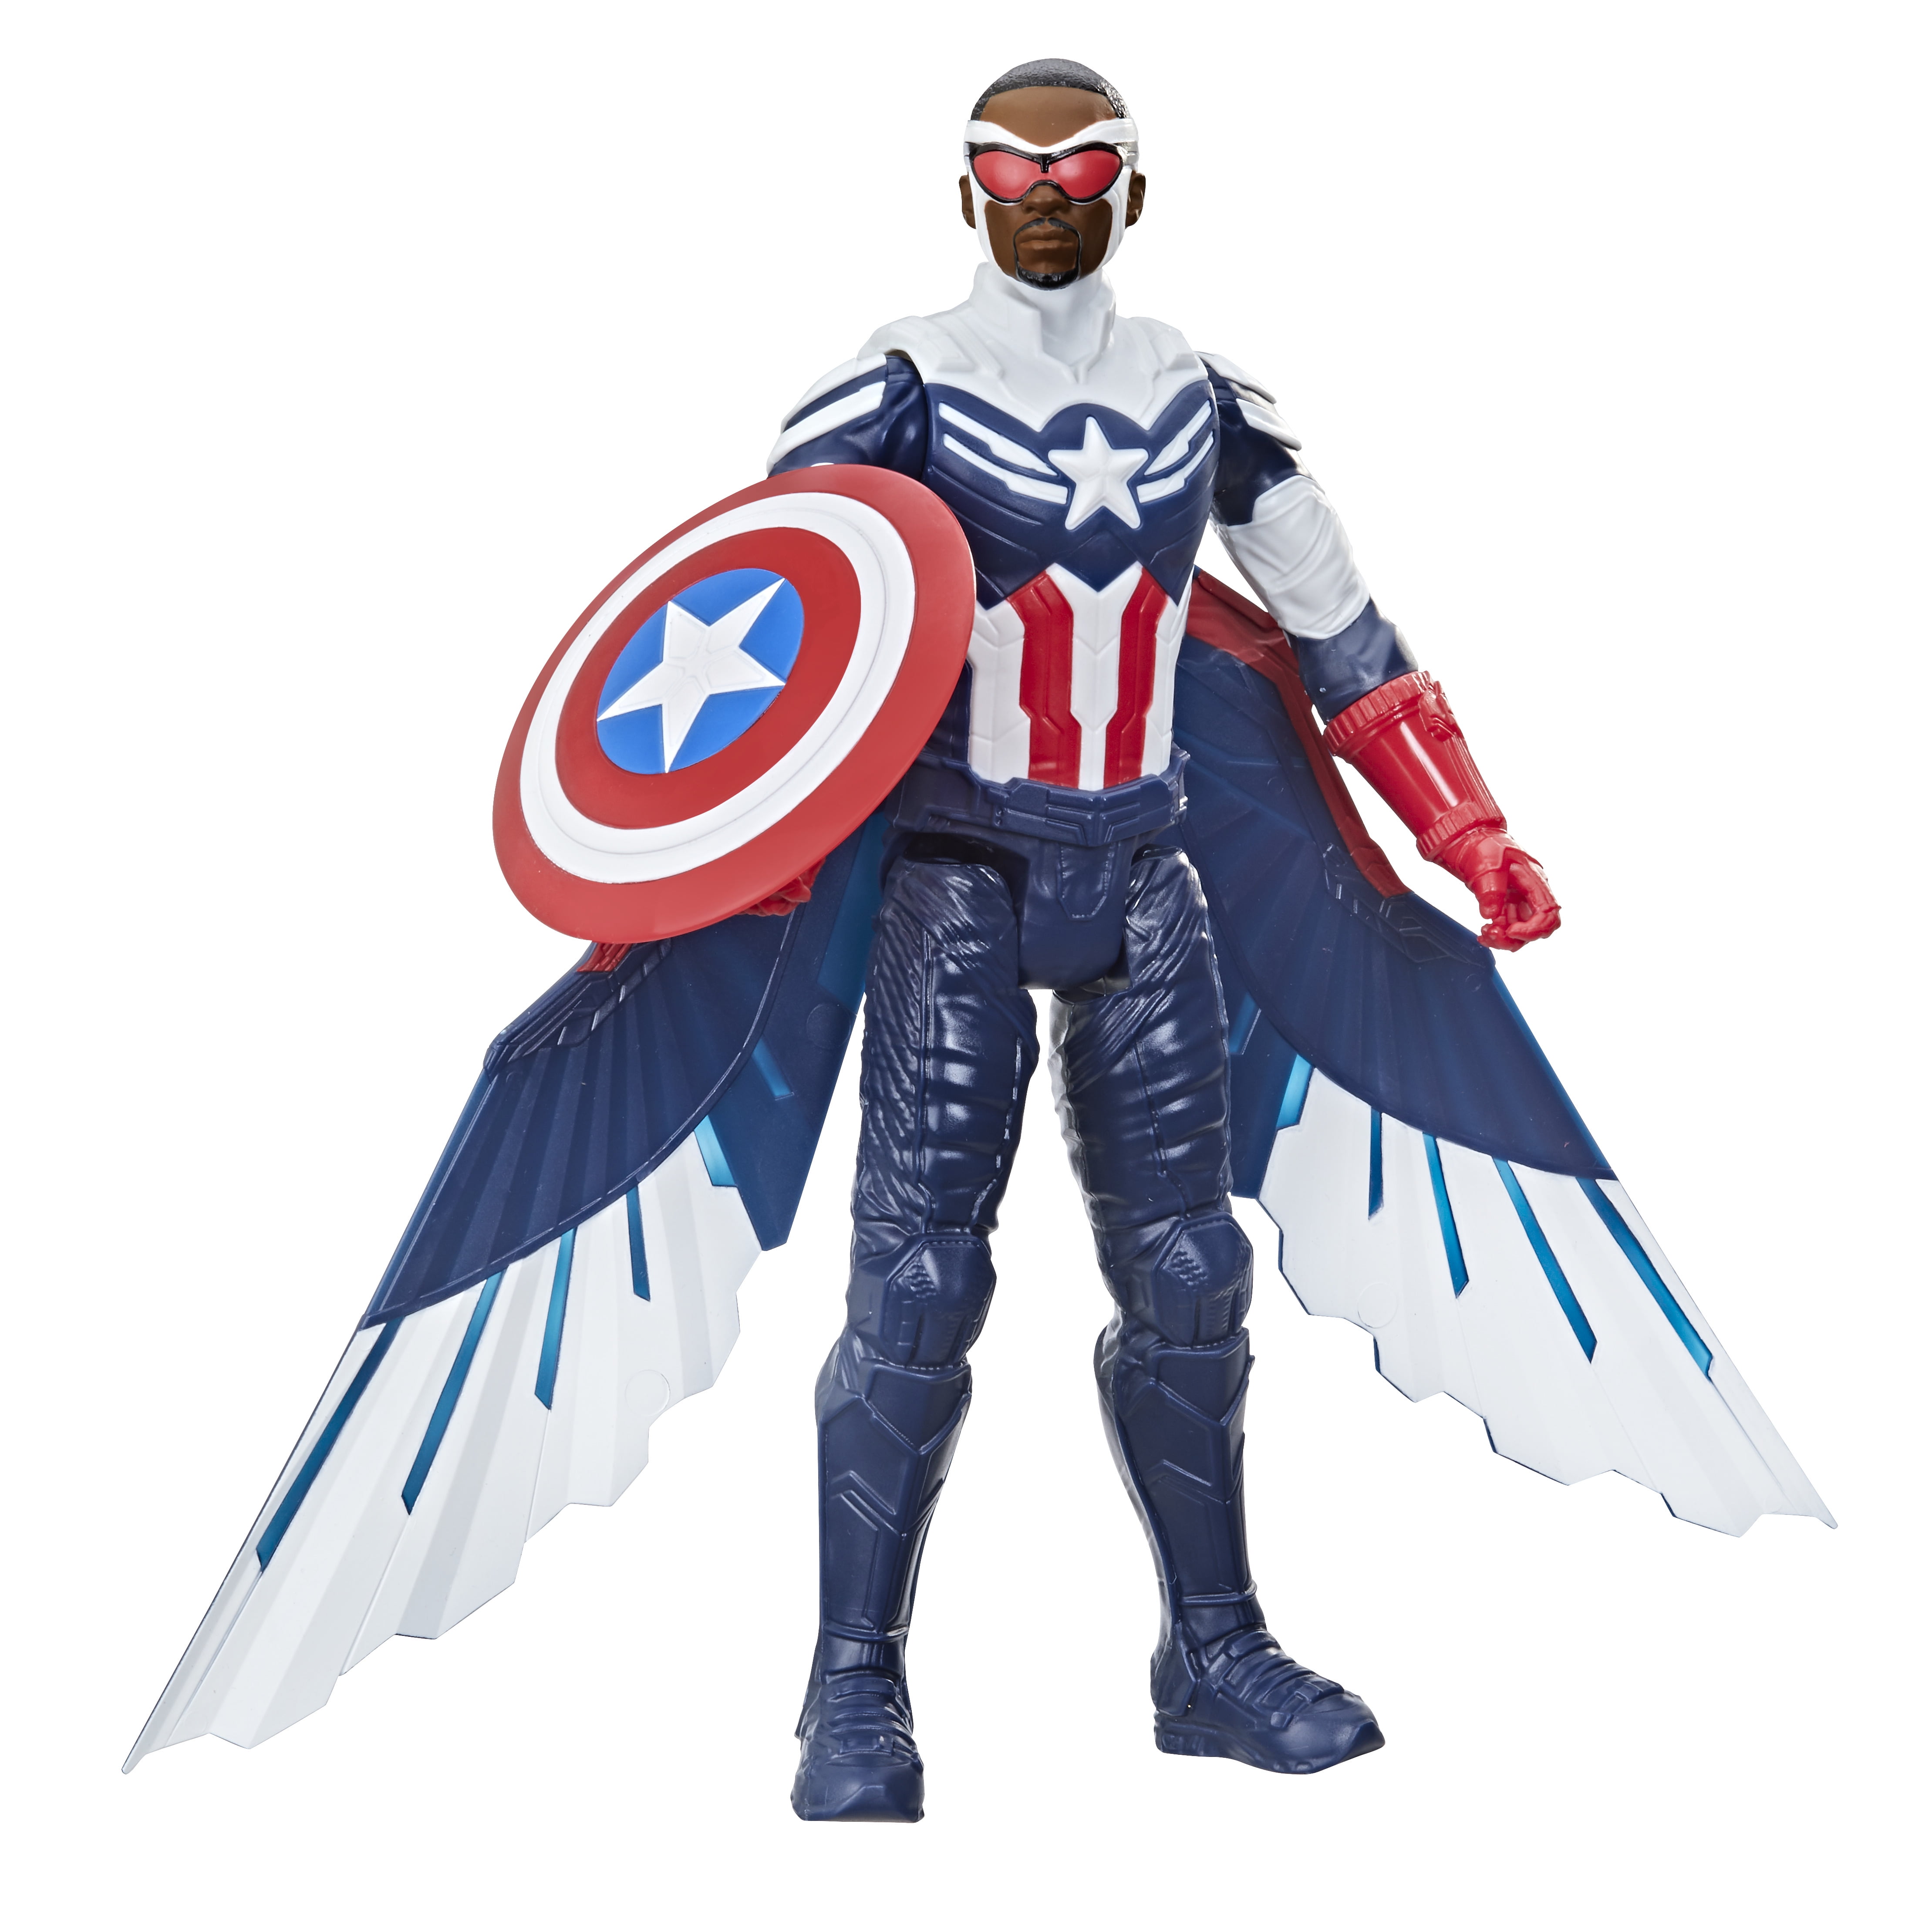 Marvel Avengers: Endgame Titan Hero Series Action Figure 4 Pack 